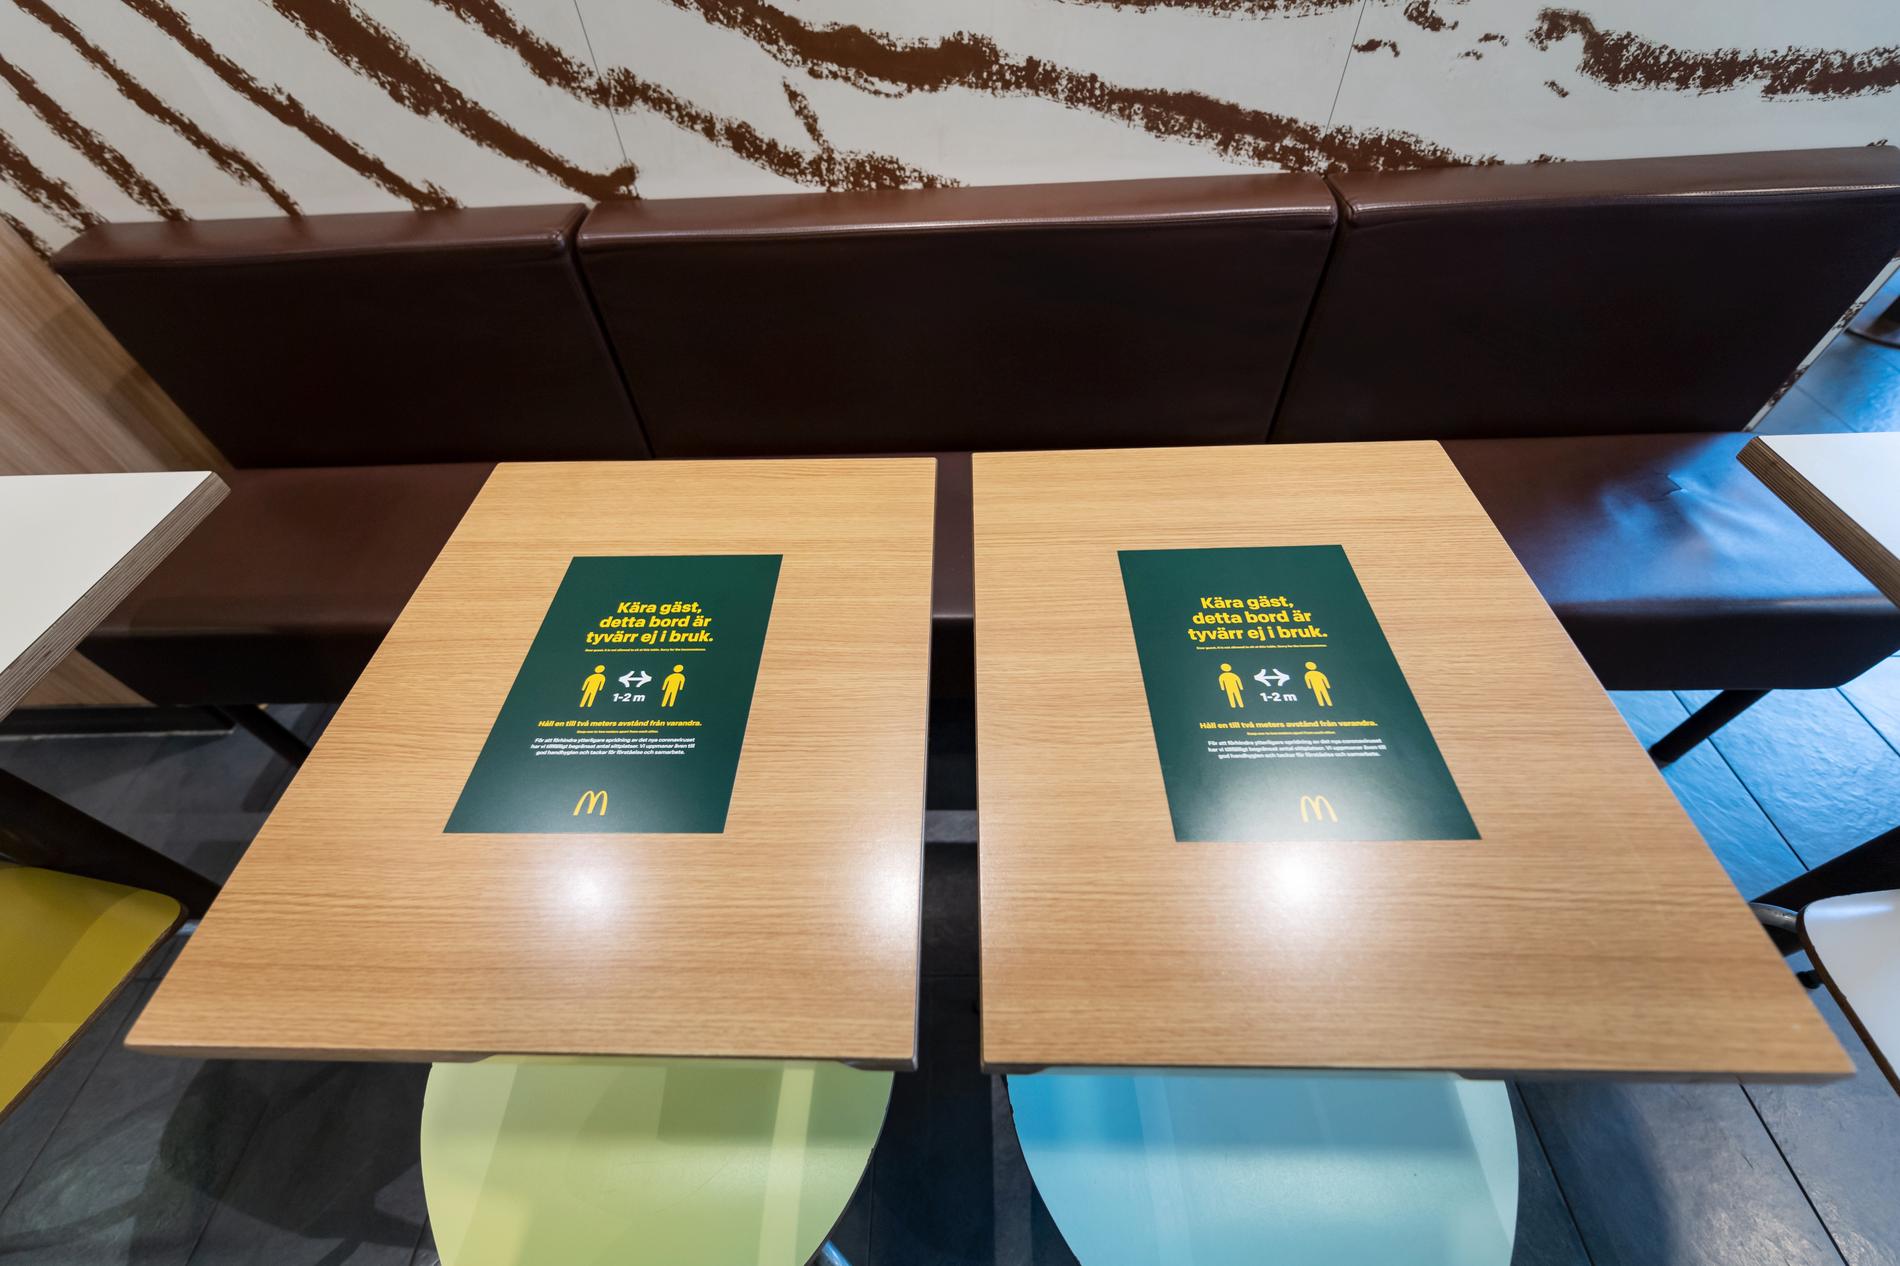 Dekaler på borden med texten "Kära gäst, detta bord är tyvärr inte i bruk" informerar McDonalds gäster om att hålla avstånden till varandra.